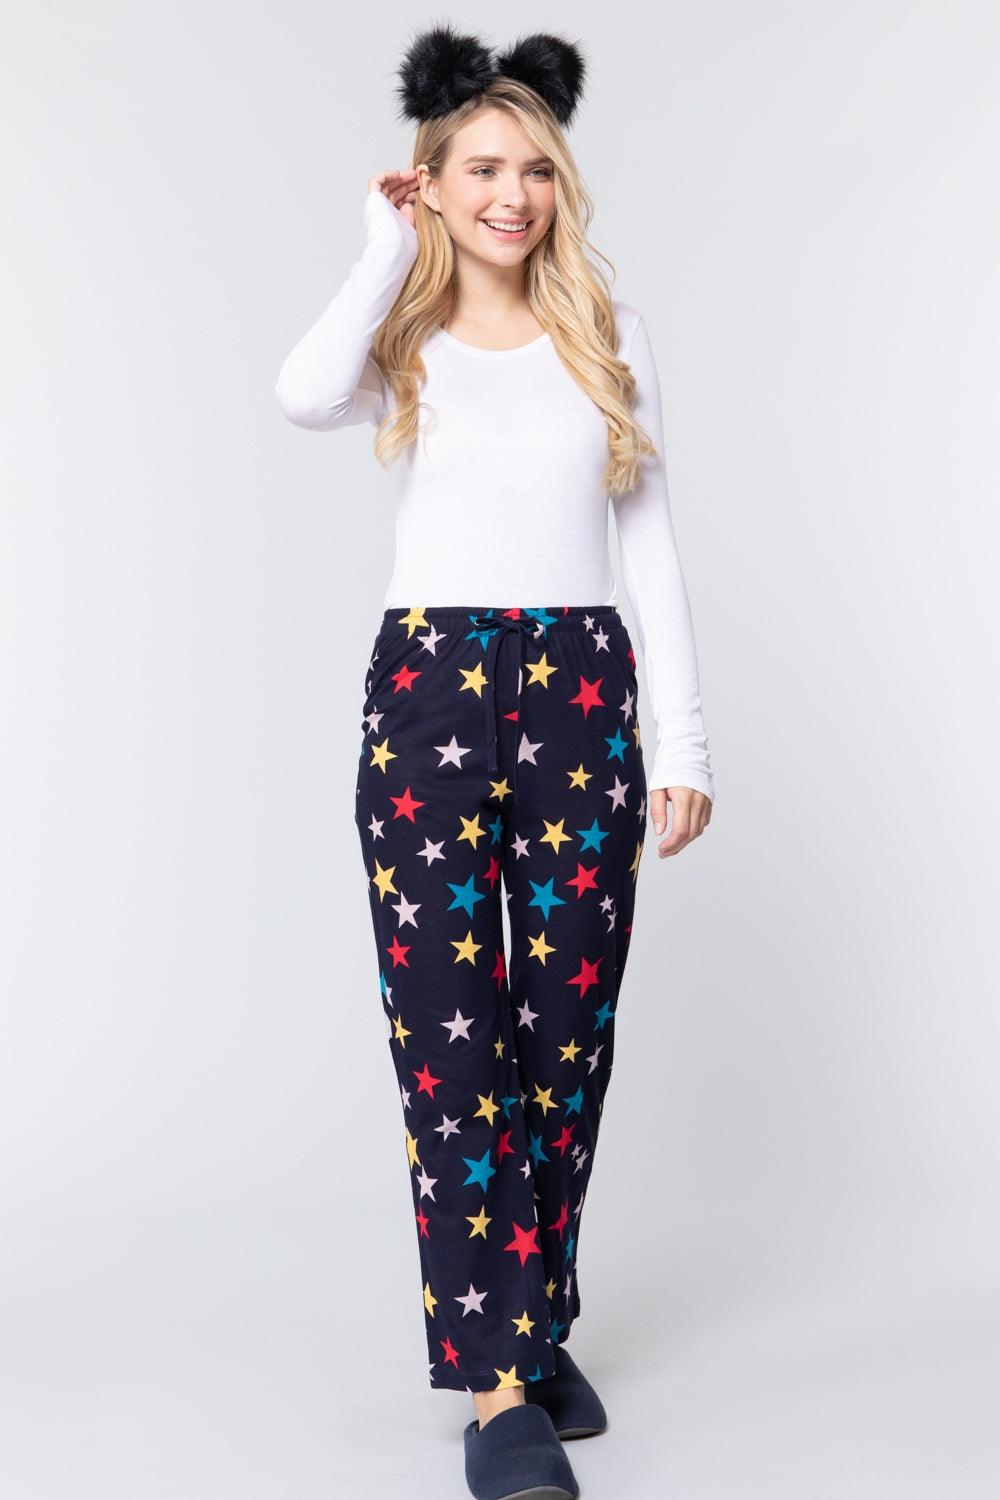 Star Print Cotton Pajama Naughty Smile Fashion